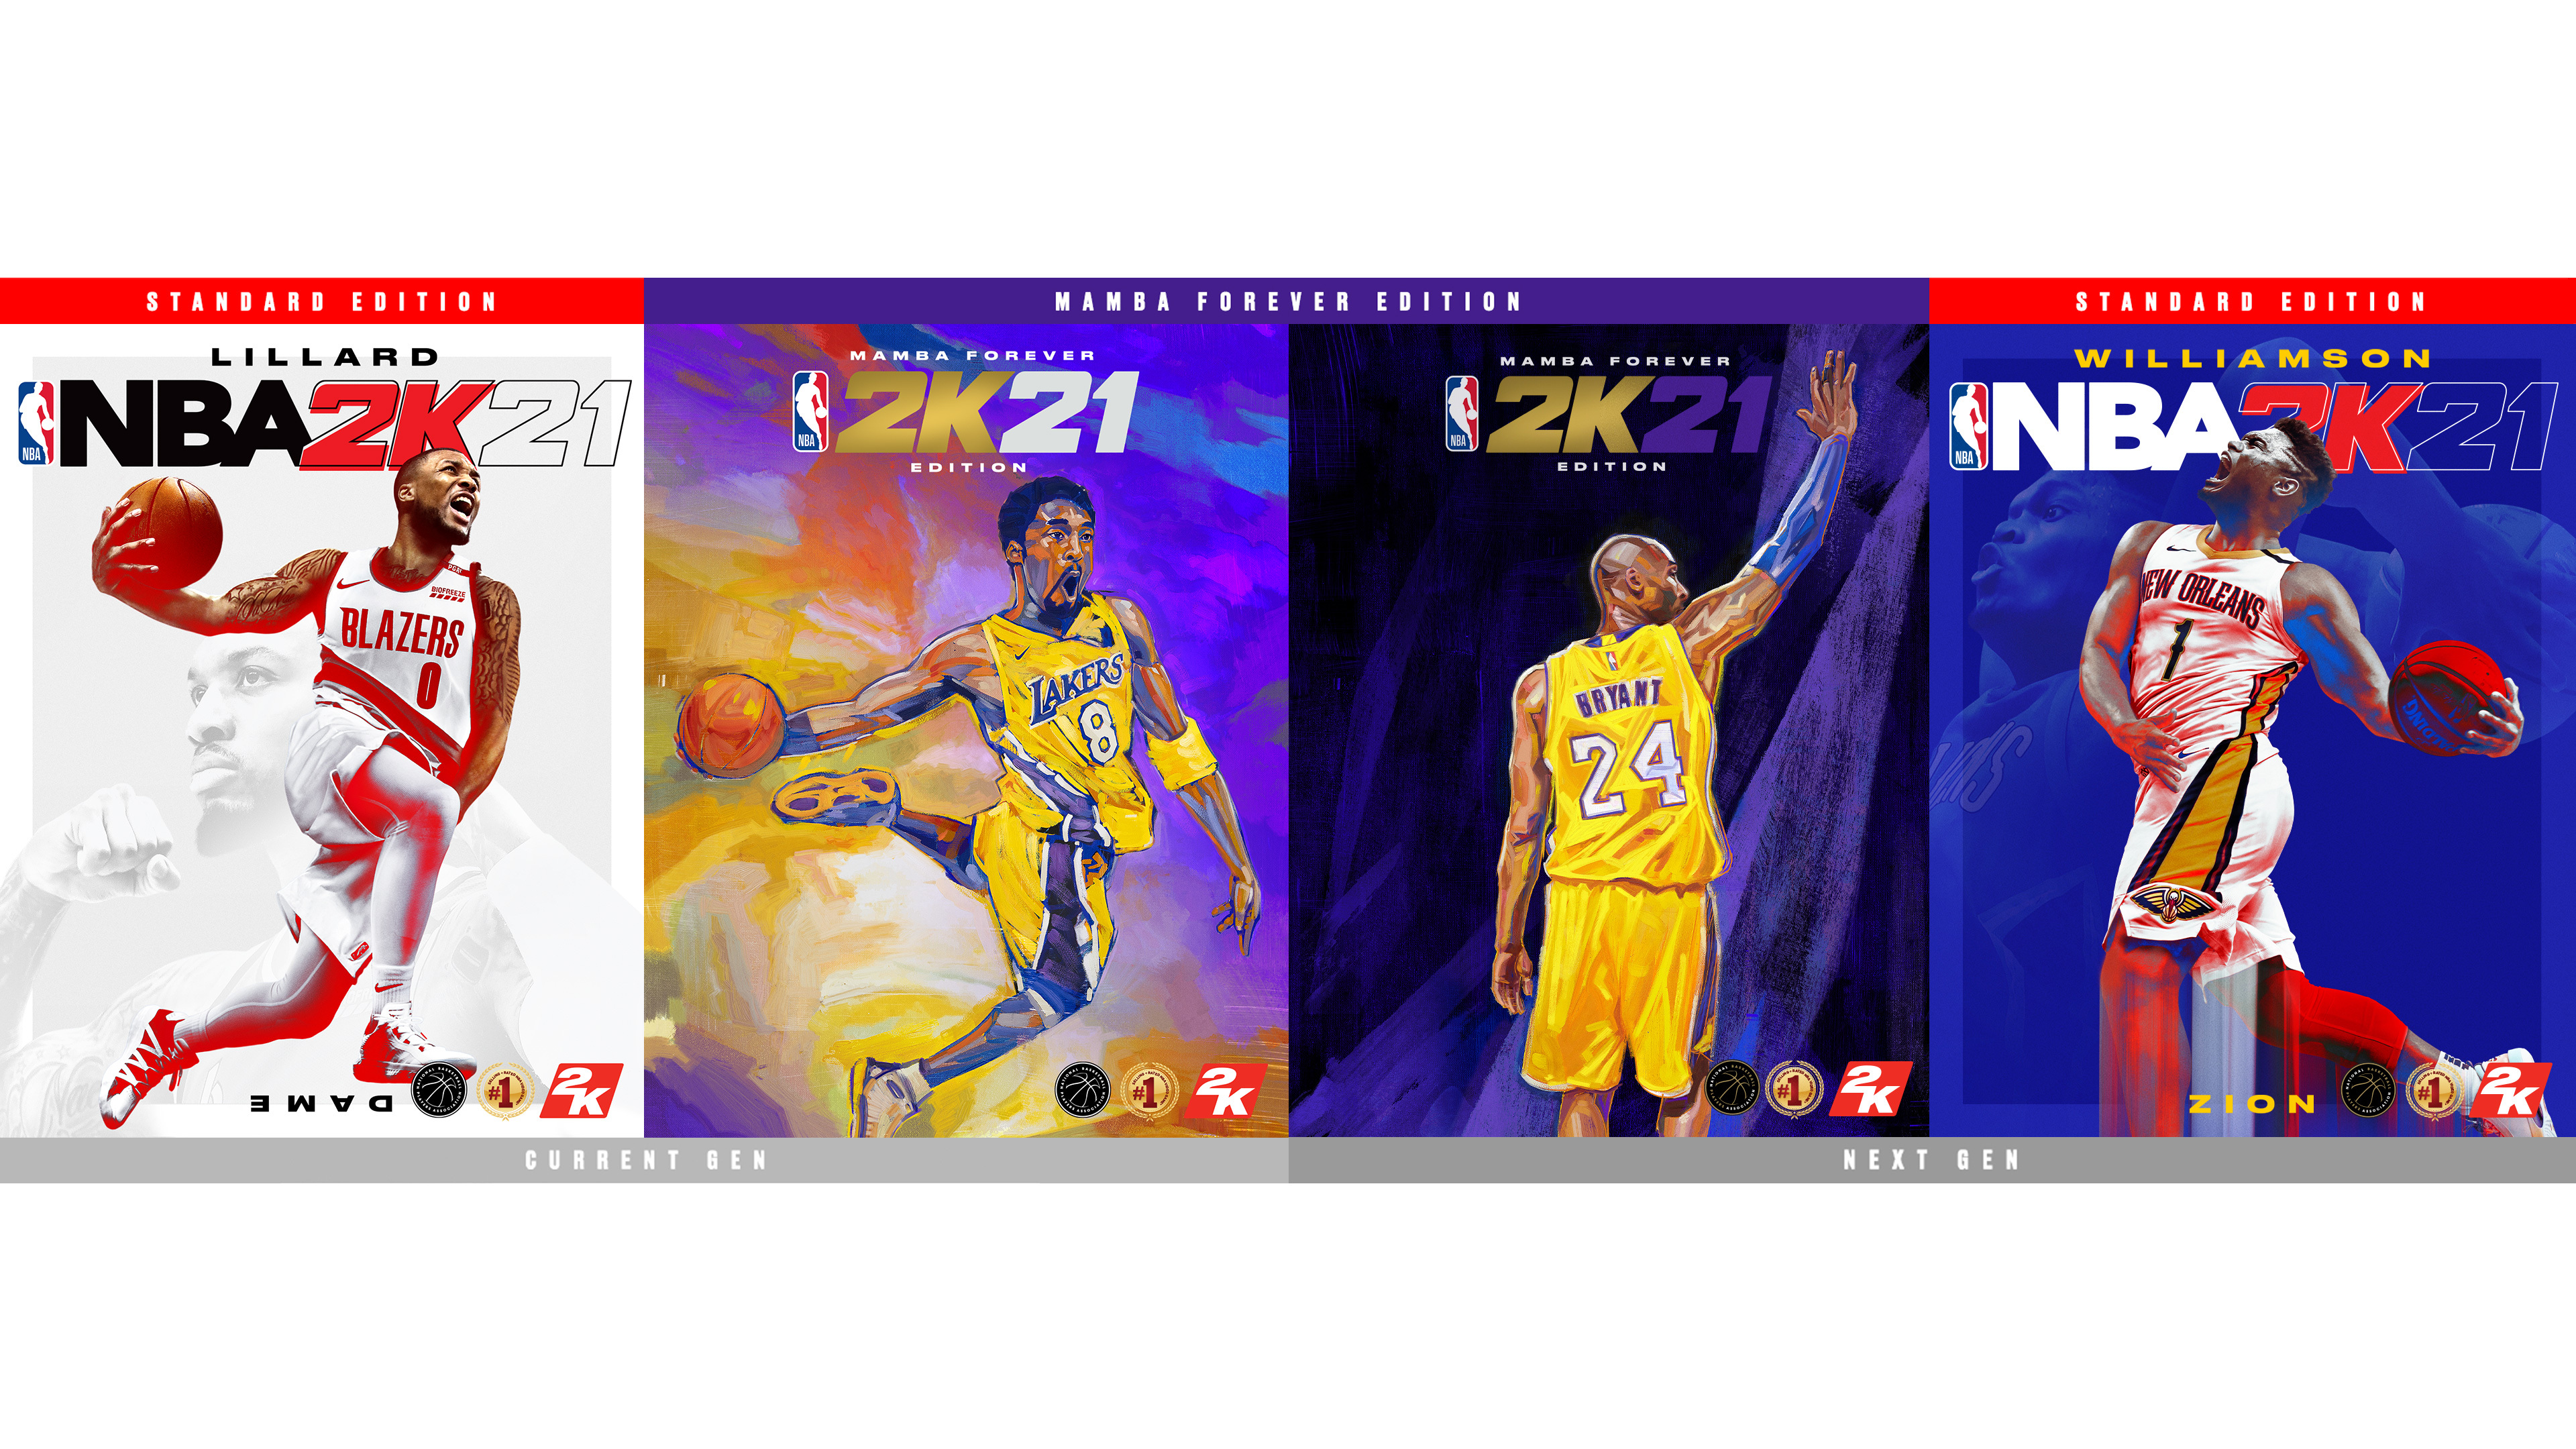 Buy NBA 2K10 Steam Key GLOBAL - Cheap - !